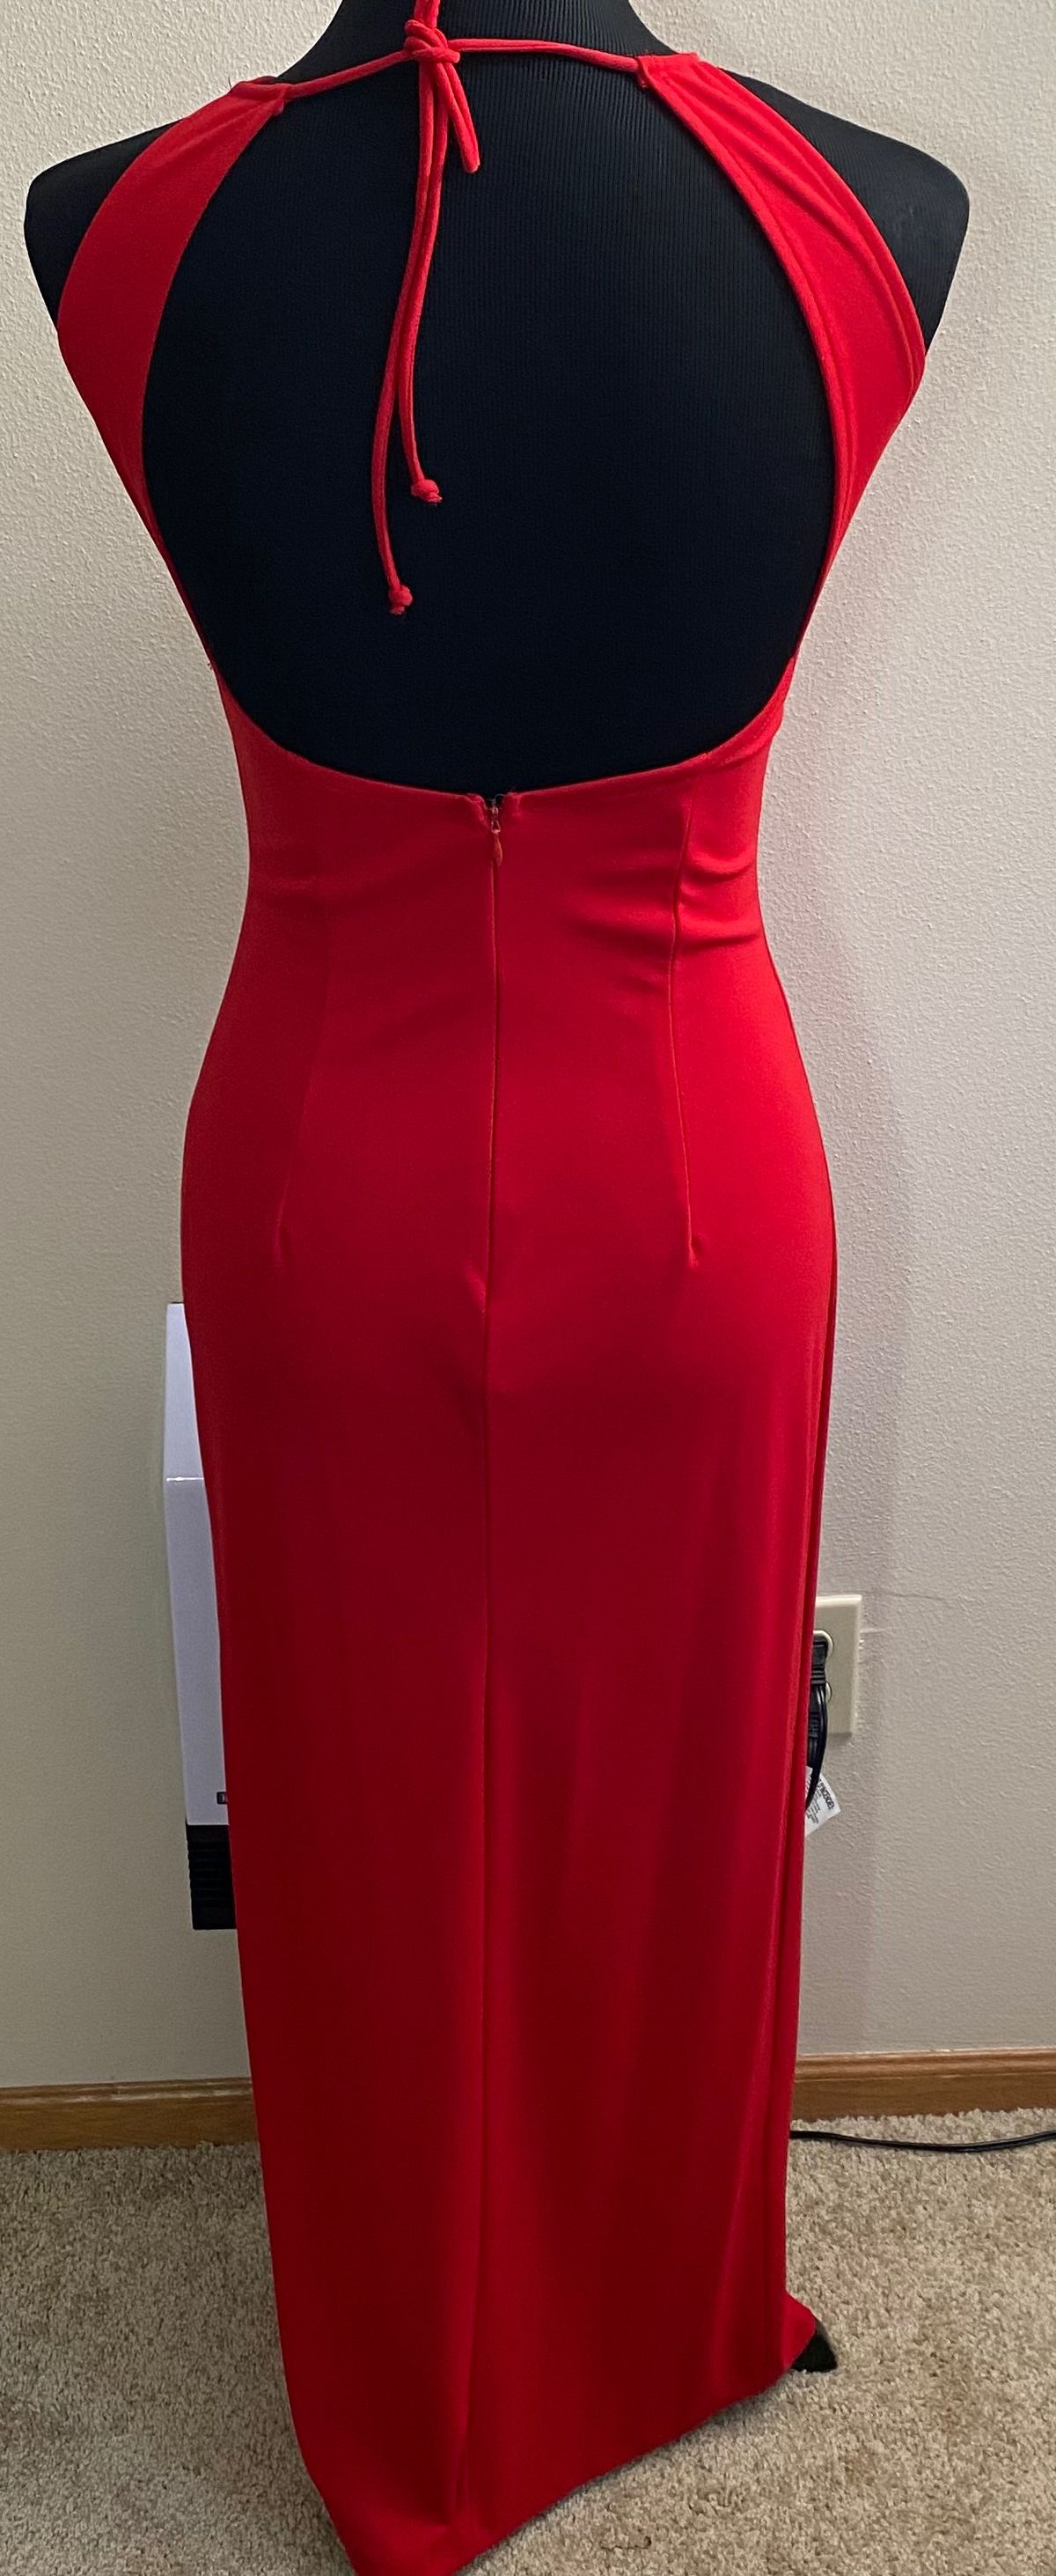 Zum Zum by Niki Livas Size 4 Prom High Neck Sequined Red Side Slit Dress on Queenly